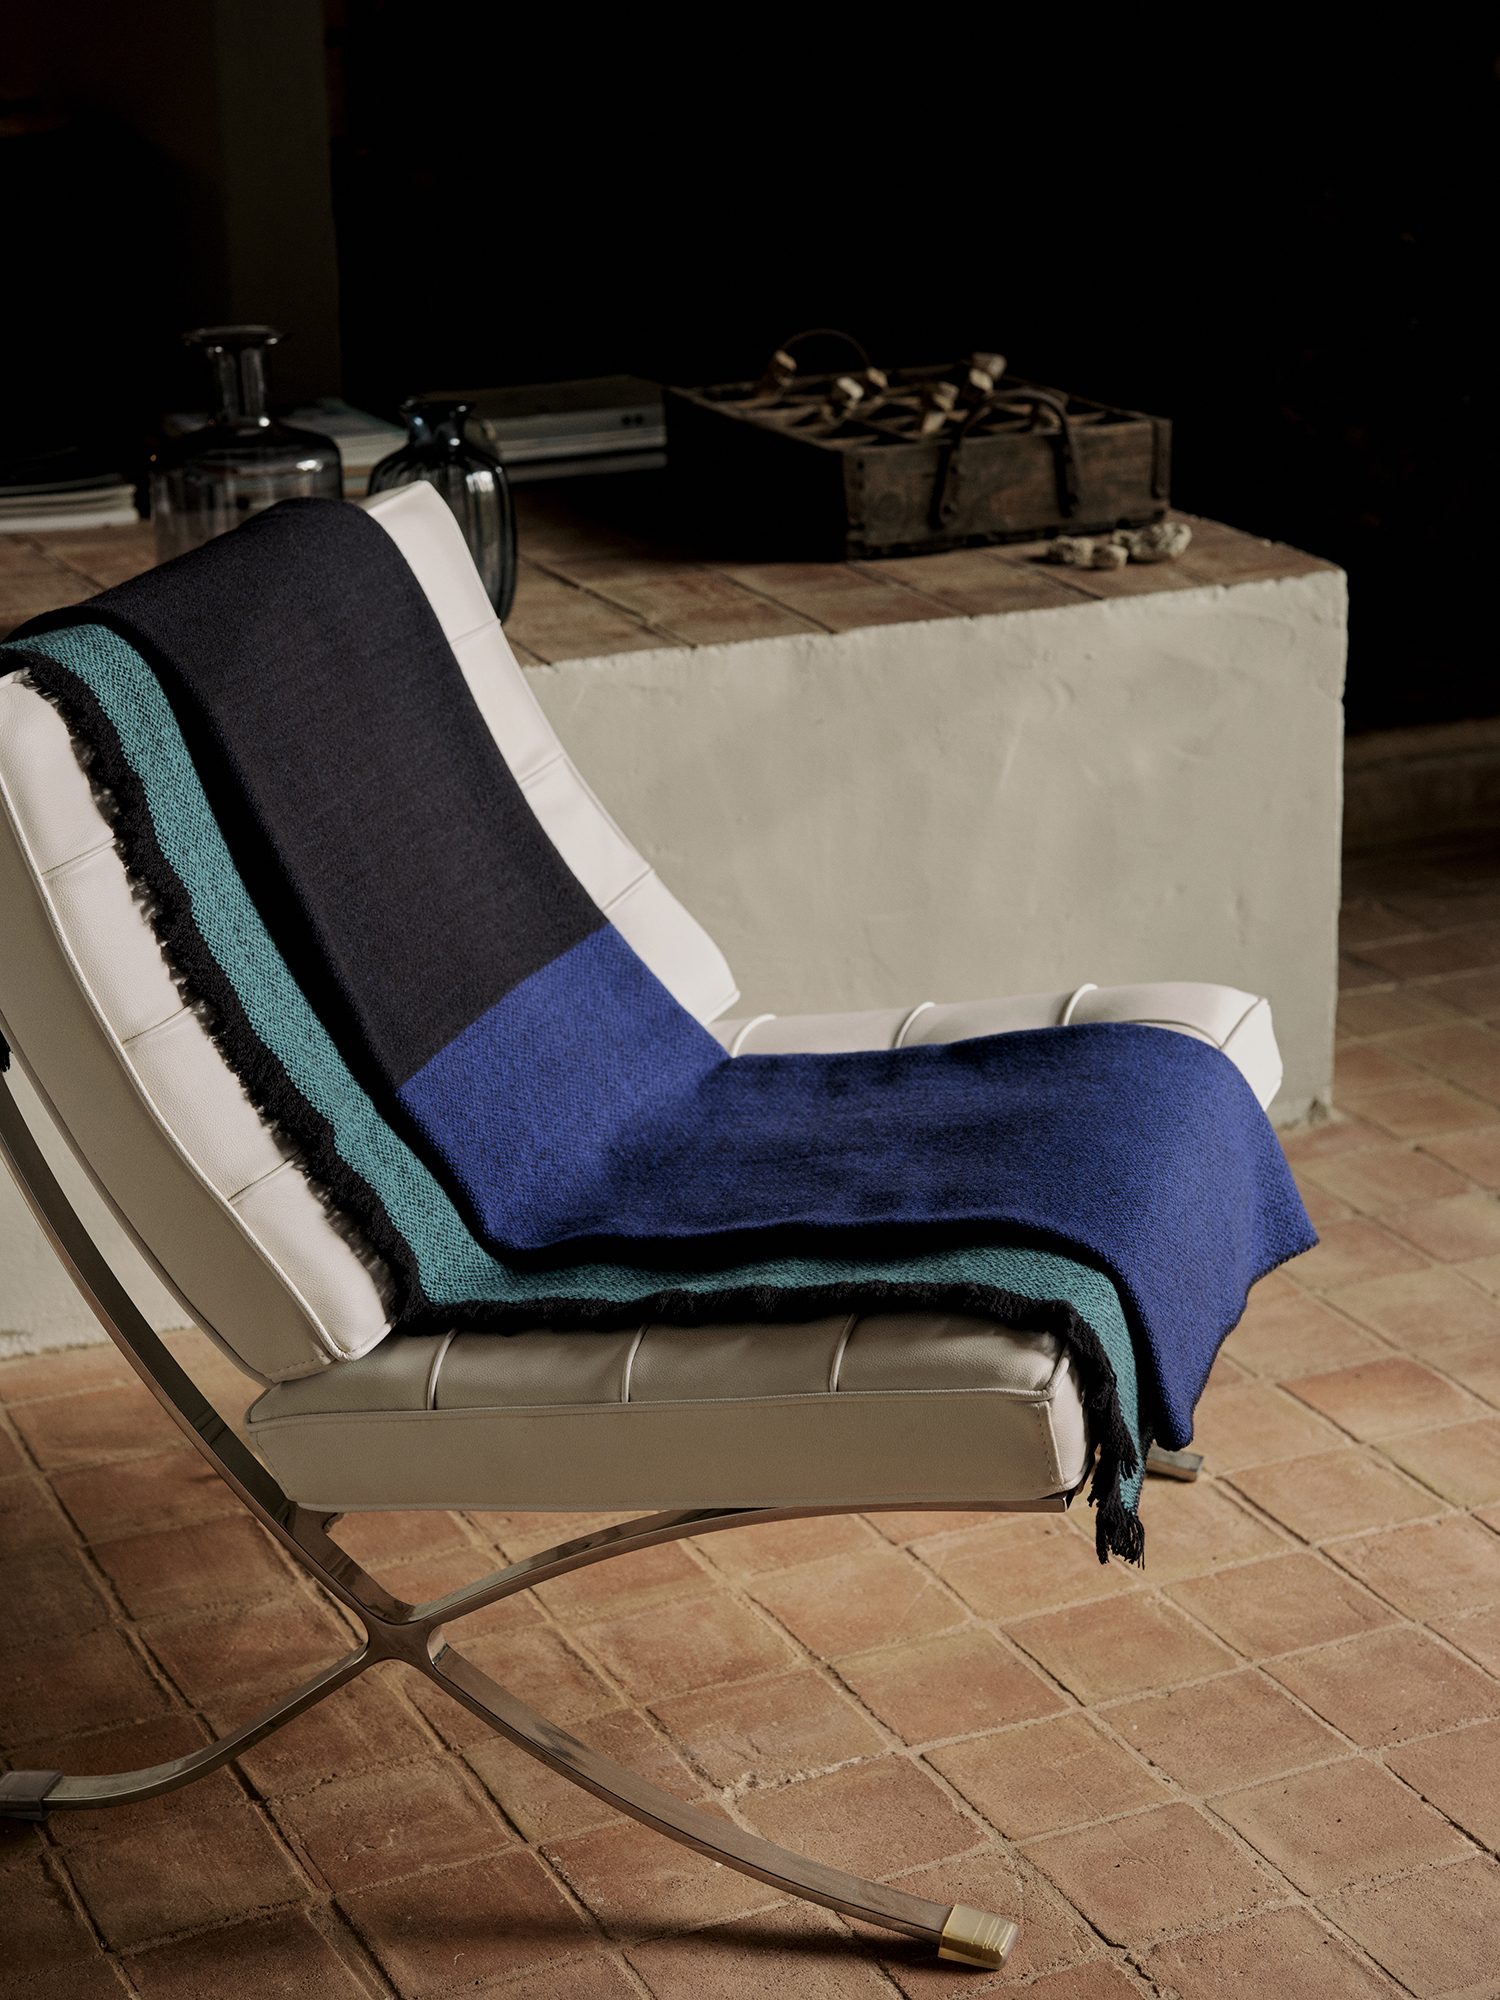 Manta de diseño en lana merino color azul marino y azul chillón sobre silla de diseño en piel blanca